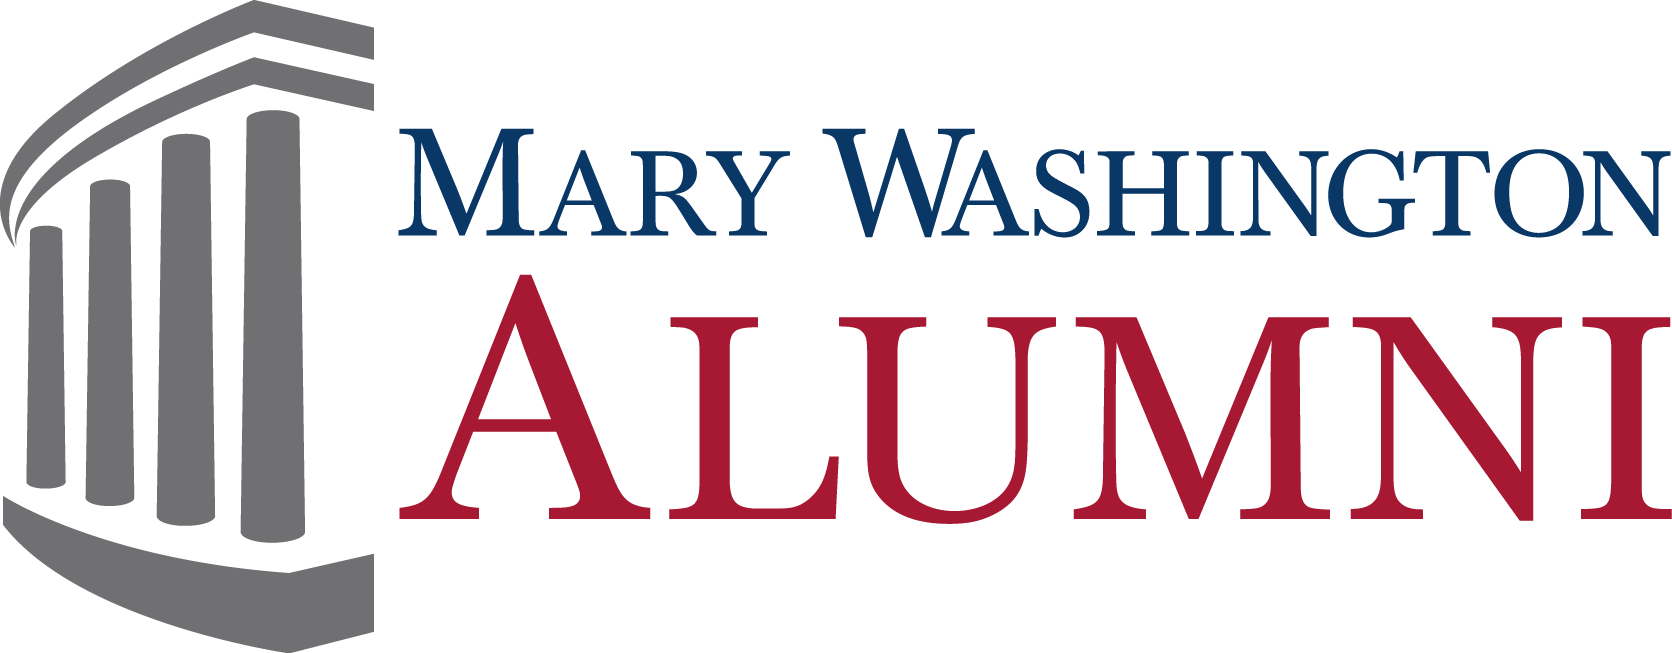 My Marywash Community Home Transparent Background - University Of Mary Washington Logo (1672x653)